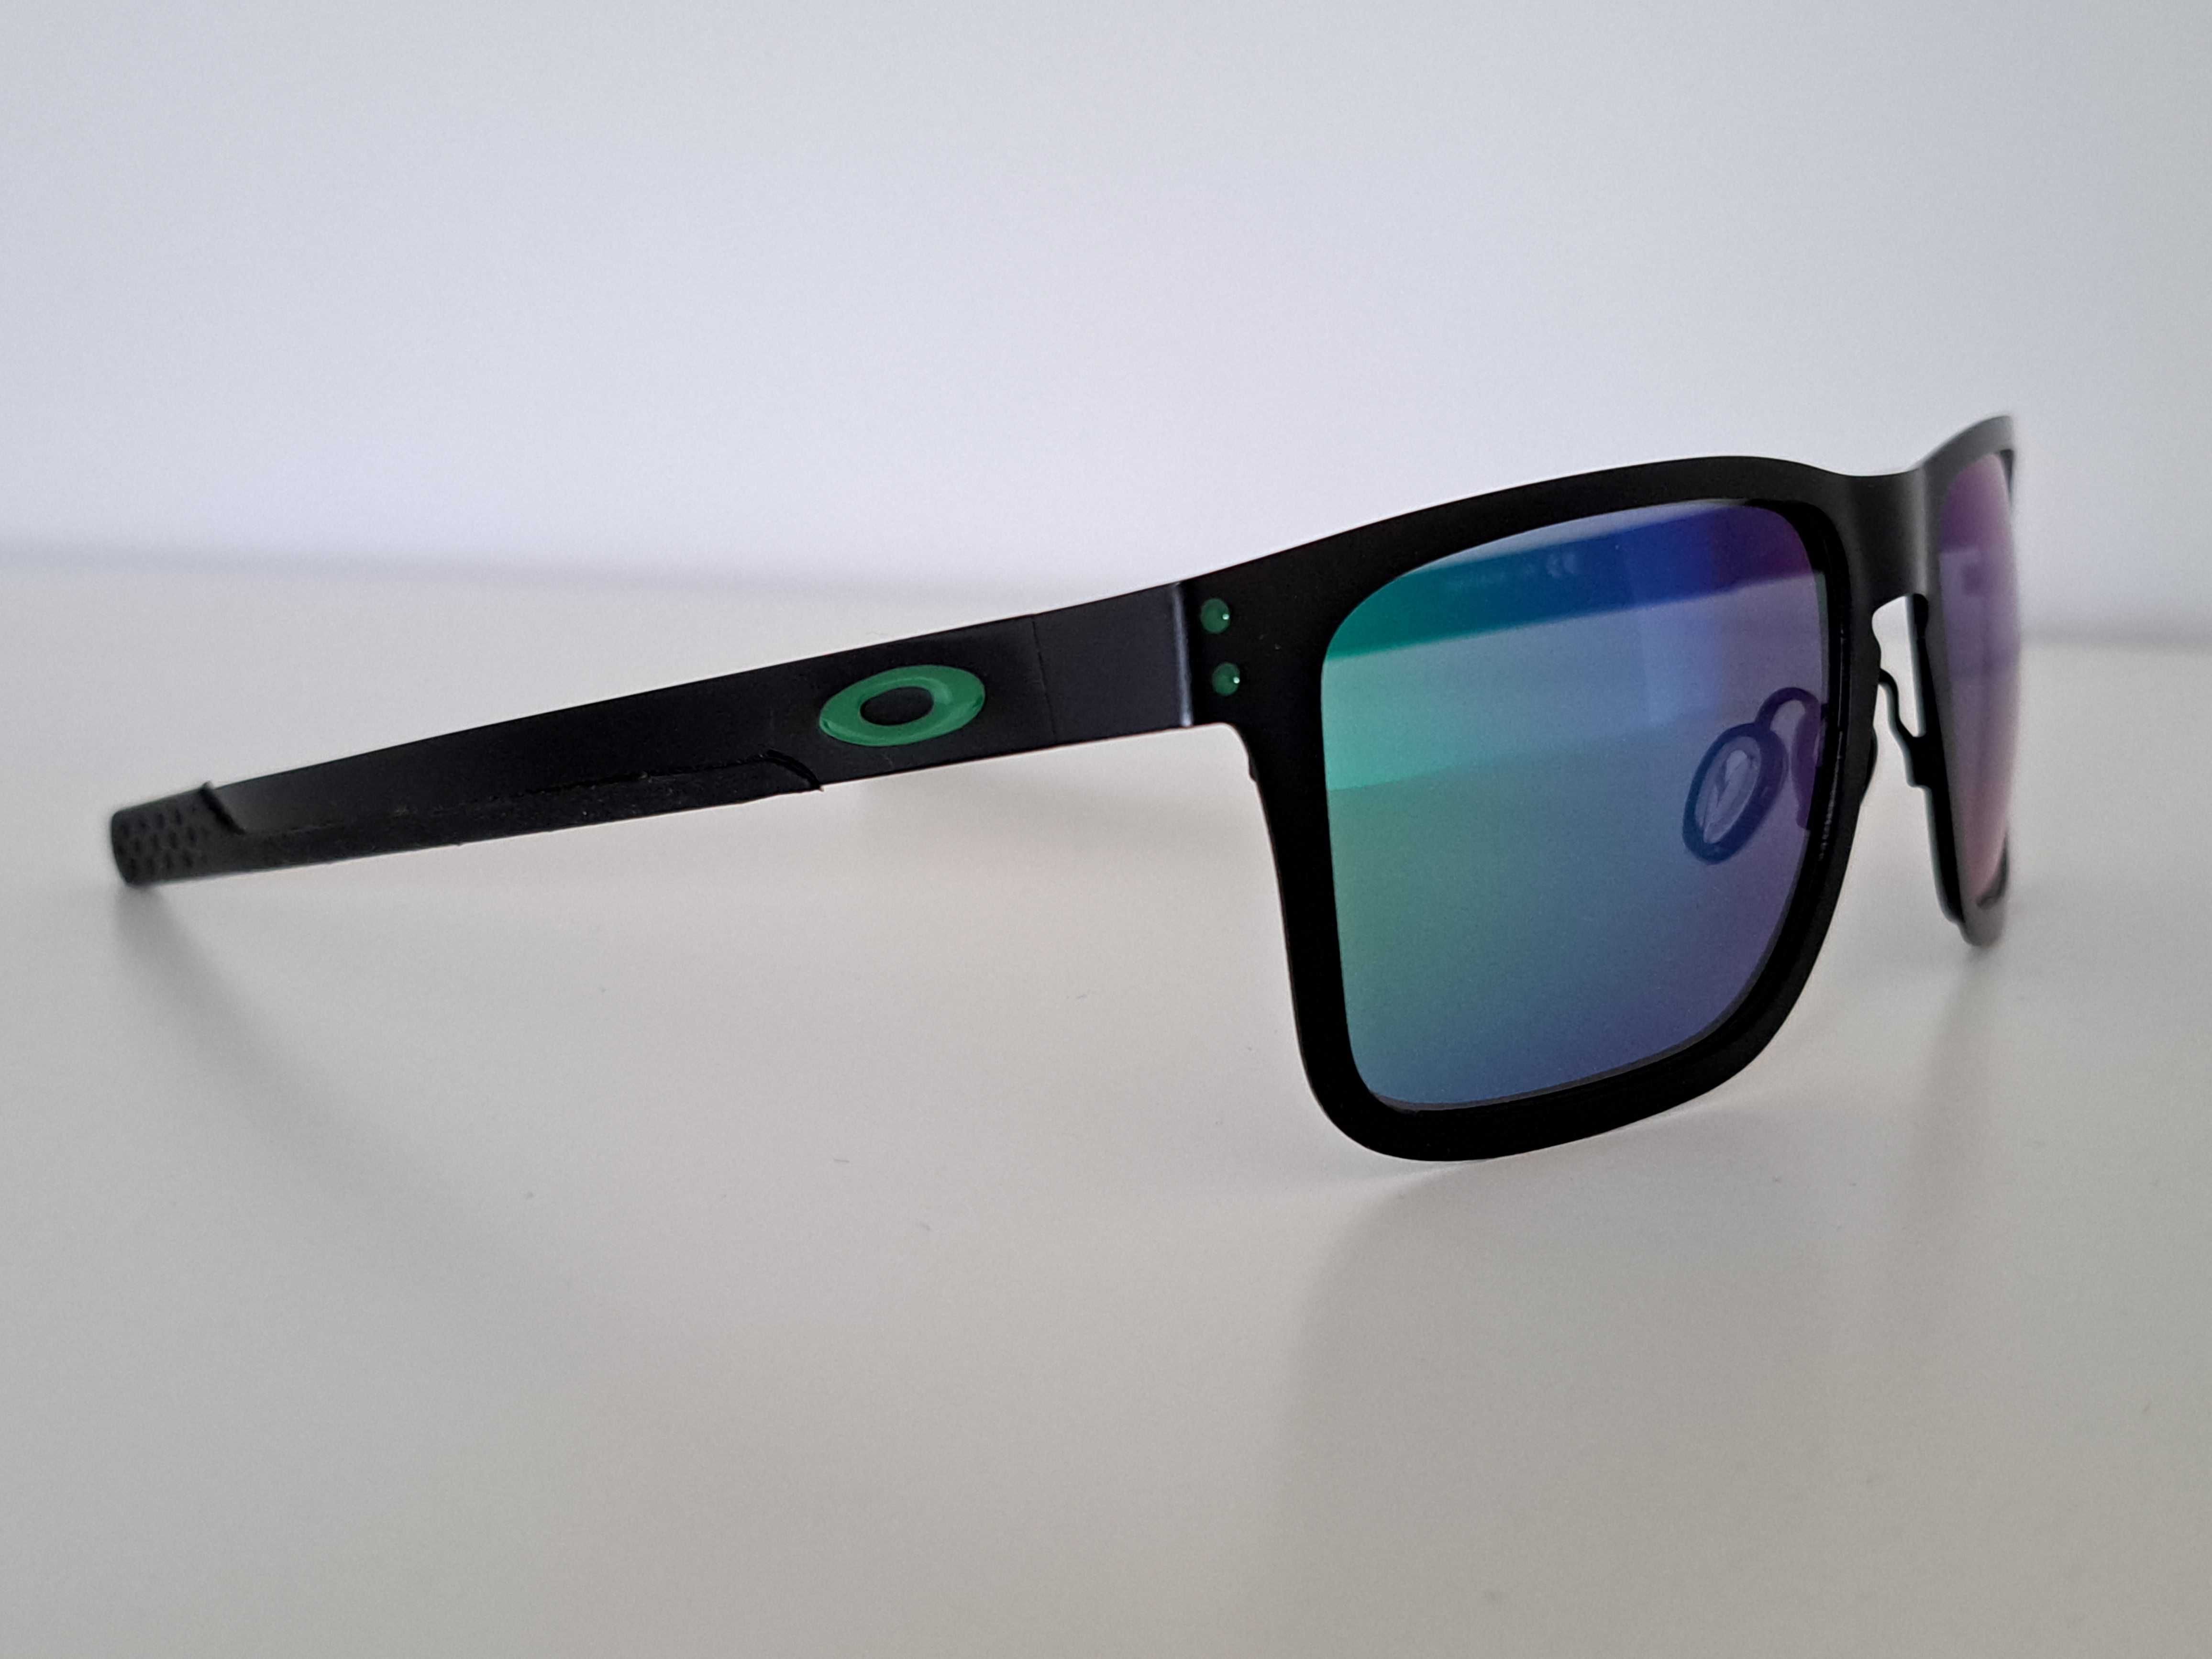 Okulary przeciwsłoneczne polaryzacyjne z metalową ramką